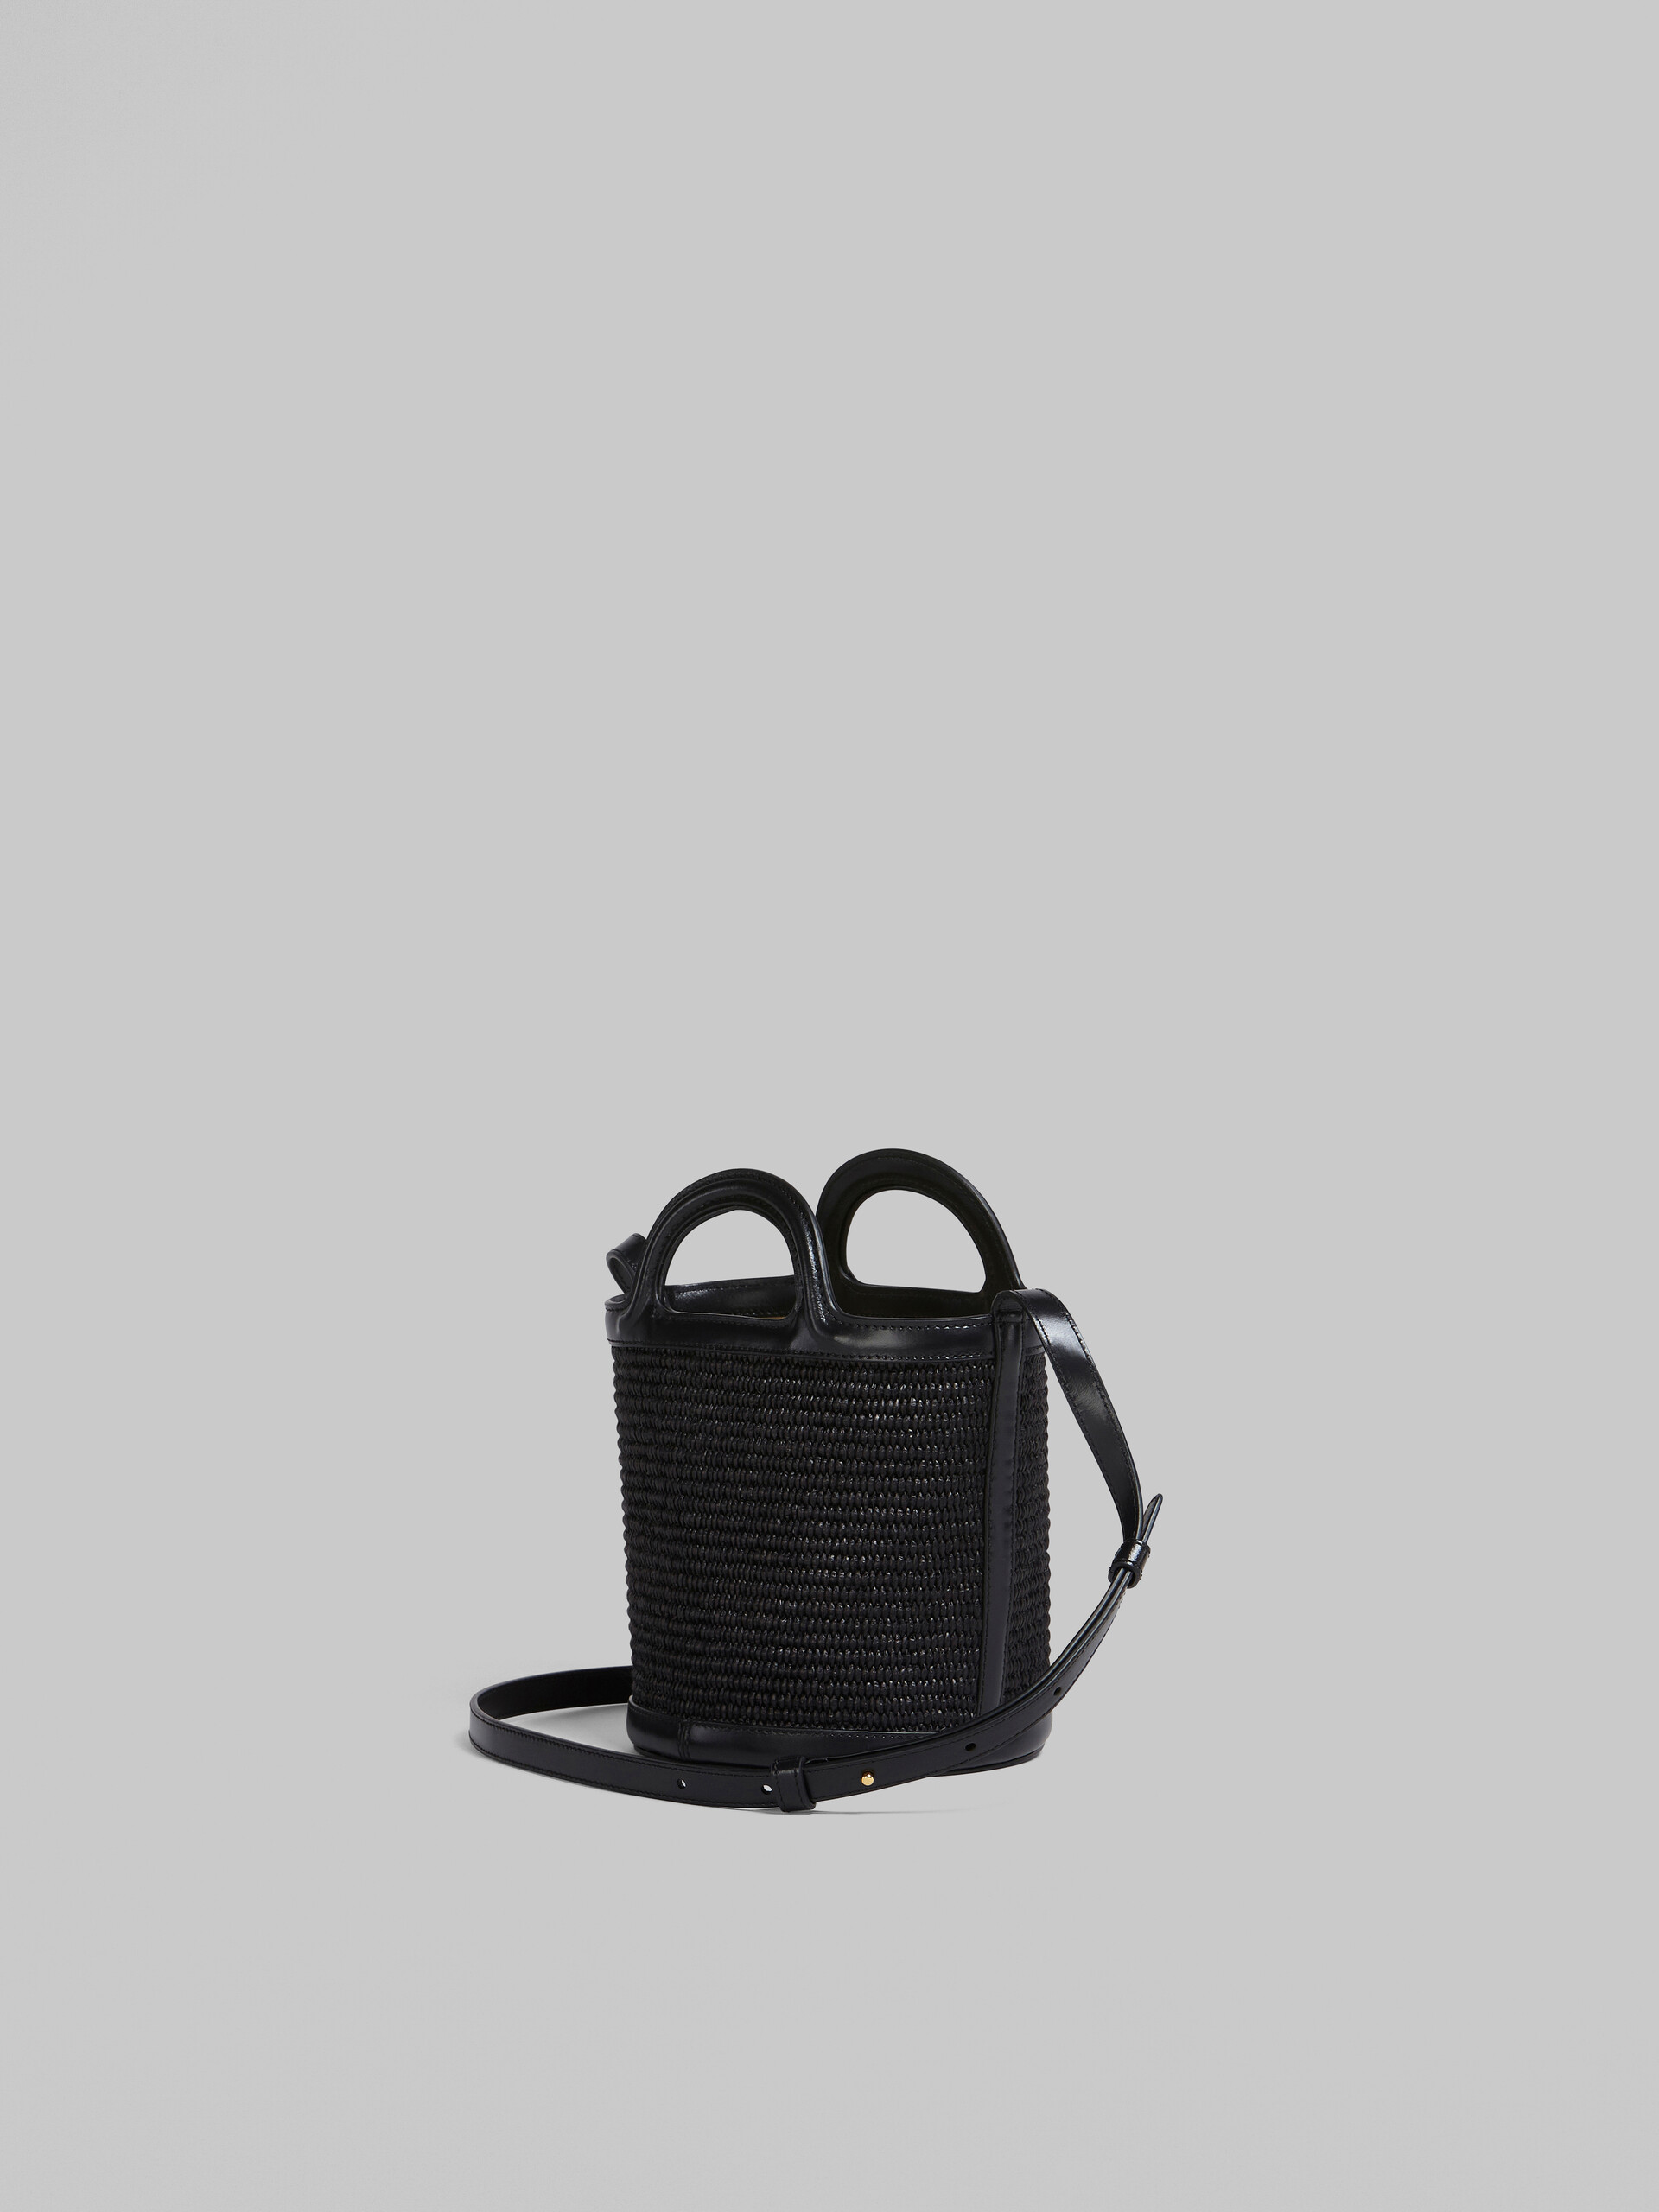 Bolso cubo pequeño Tropicalia de piel negra y rafia - Bolsos de hombro - Image 2